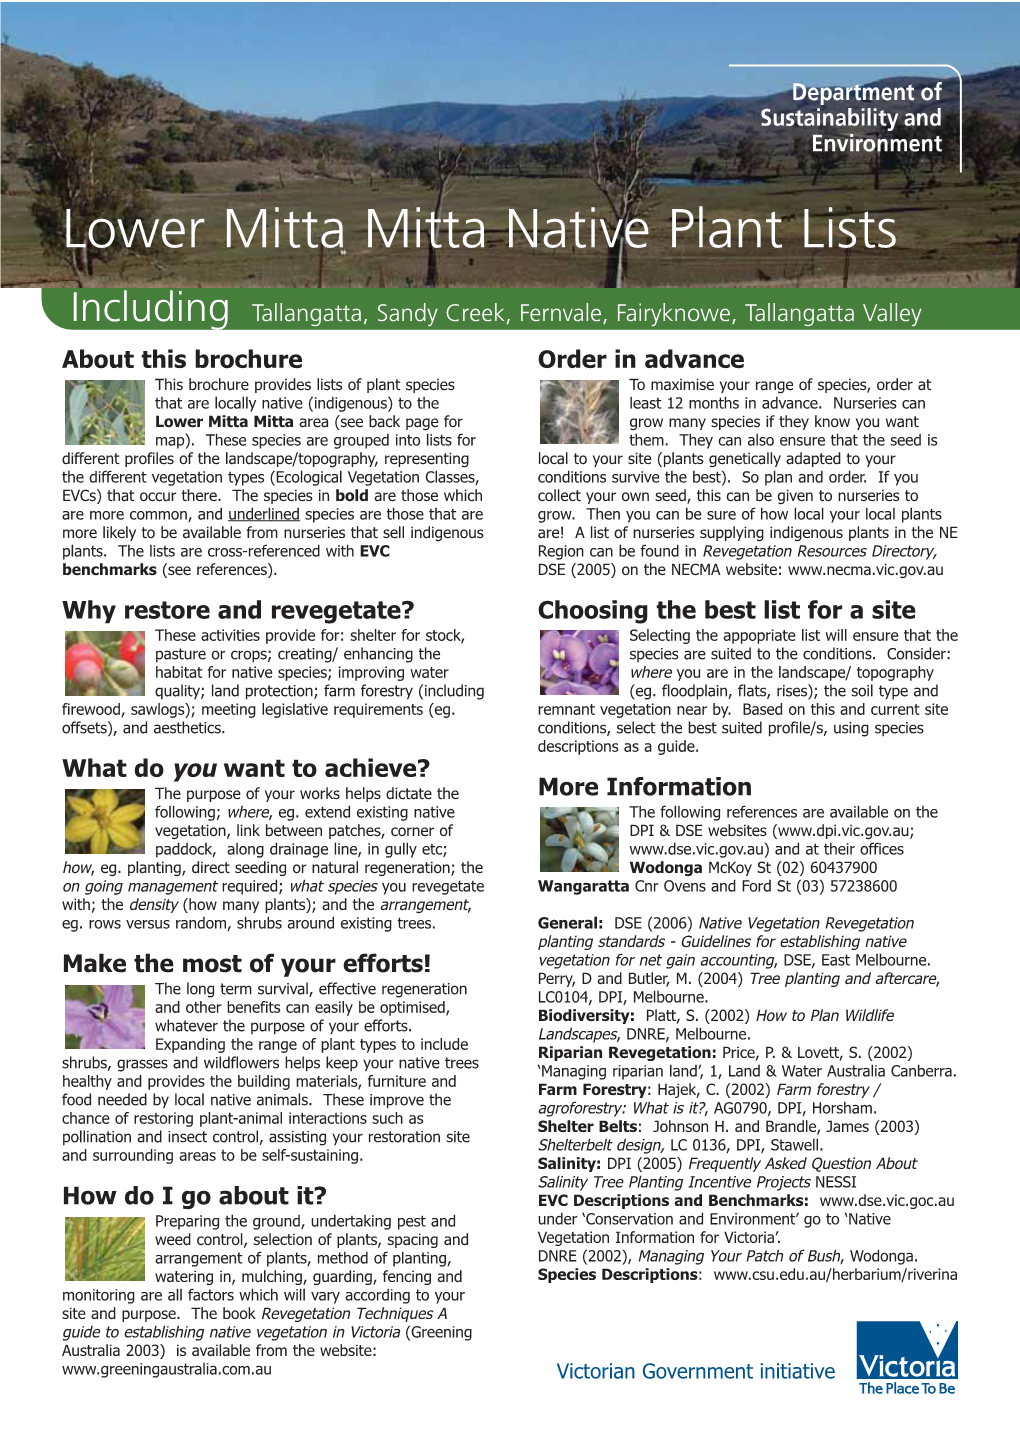 Lower Mitta Mitta Native Plant Lists